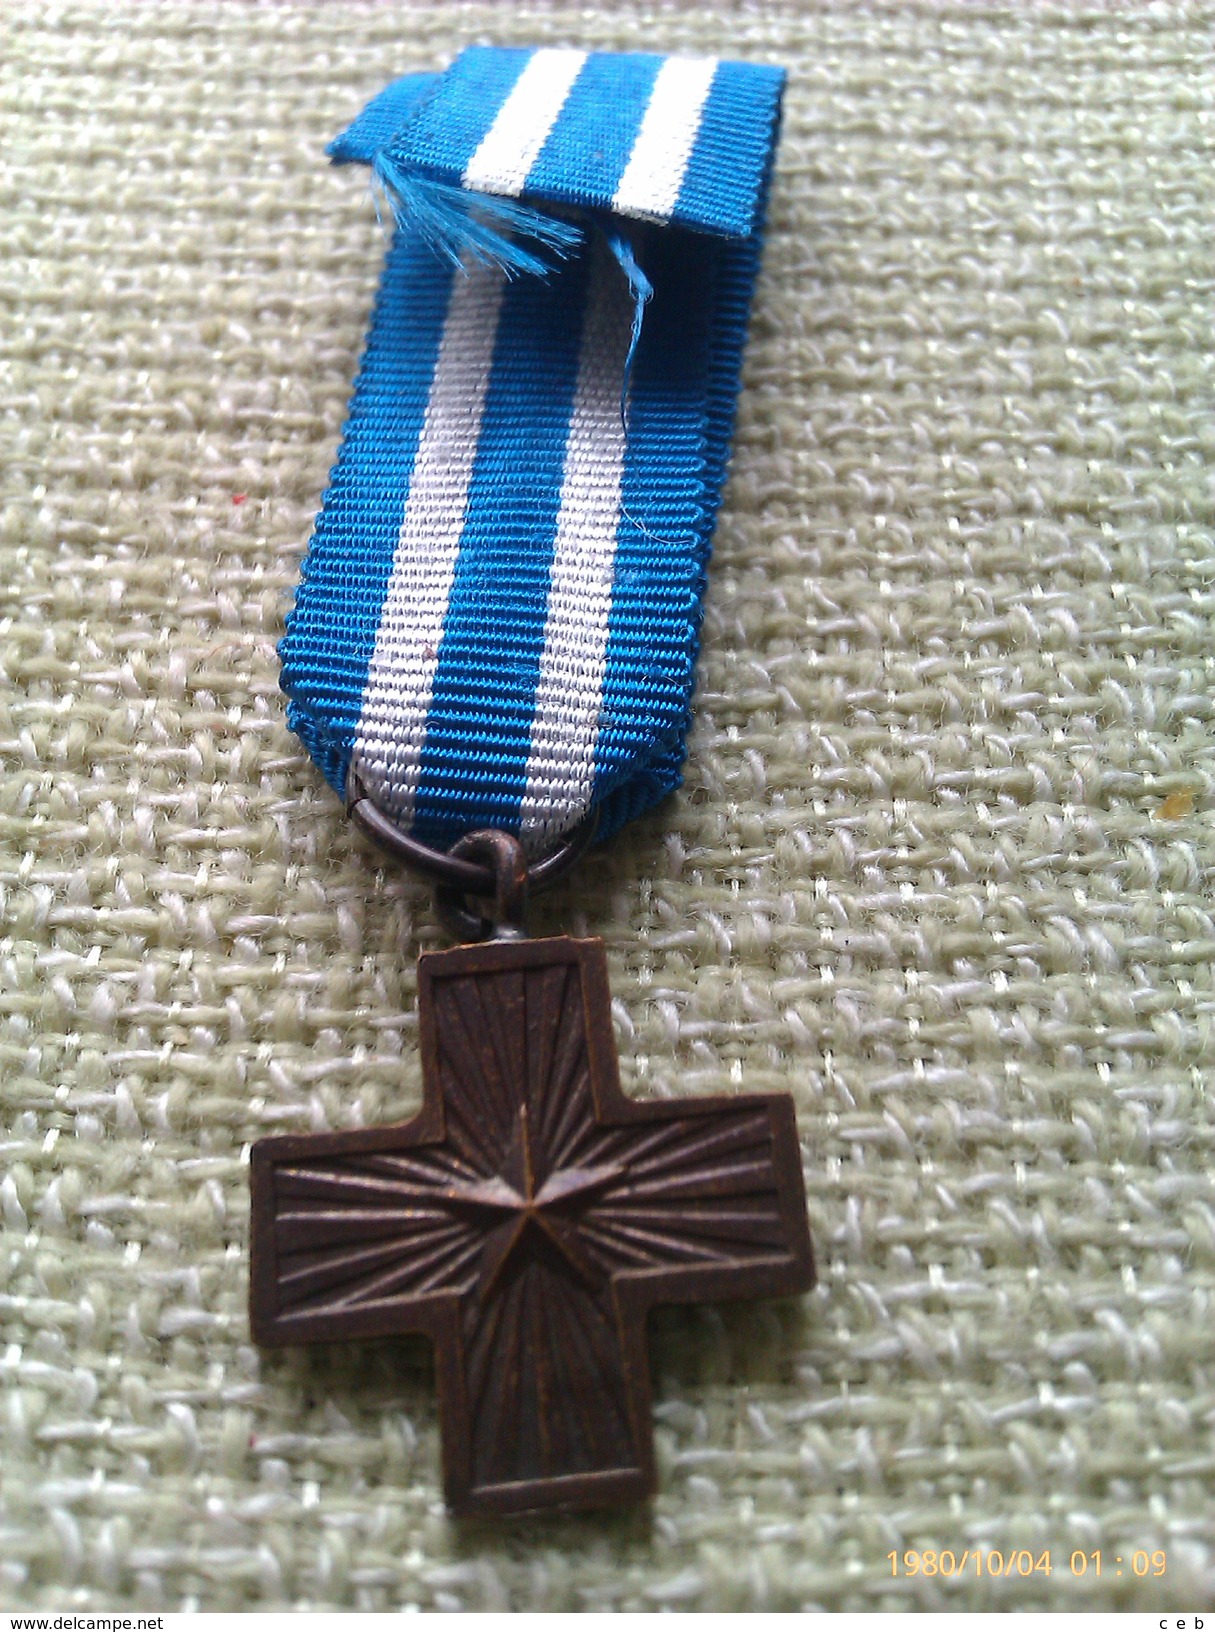 Medalla Miniatura Croce Valore Di Guerra. Italia. II Guerra Mundial. 1945. Categoría Bronce. Dada A Los Excombatientes - Italia